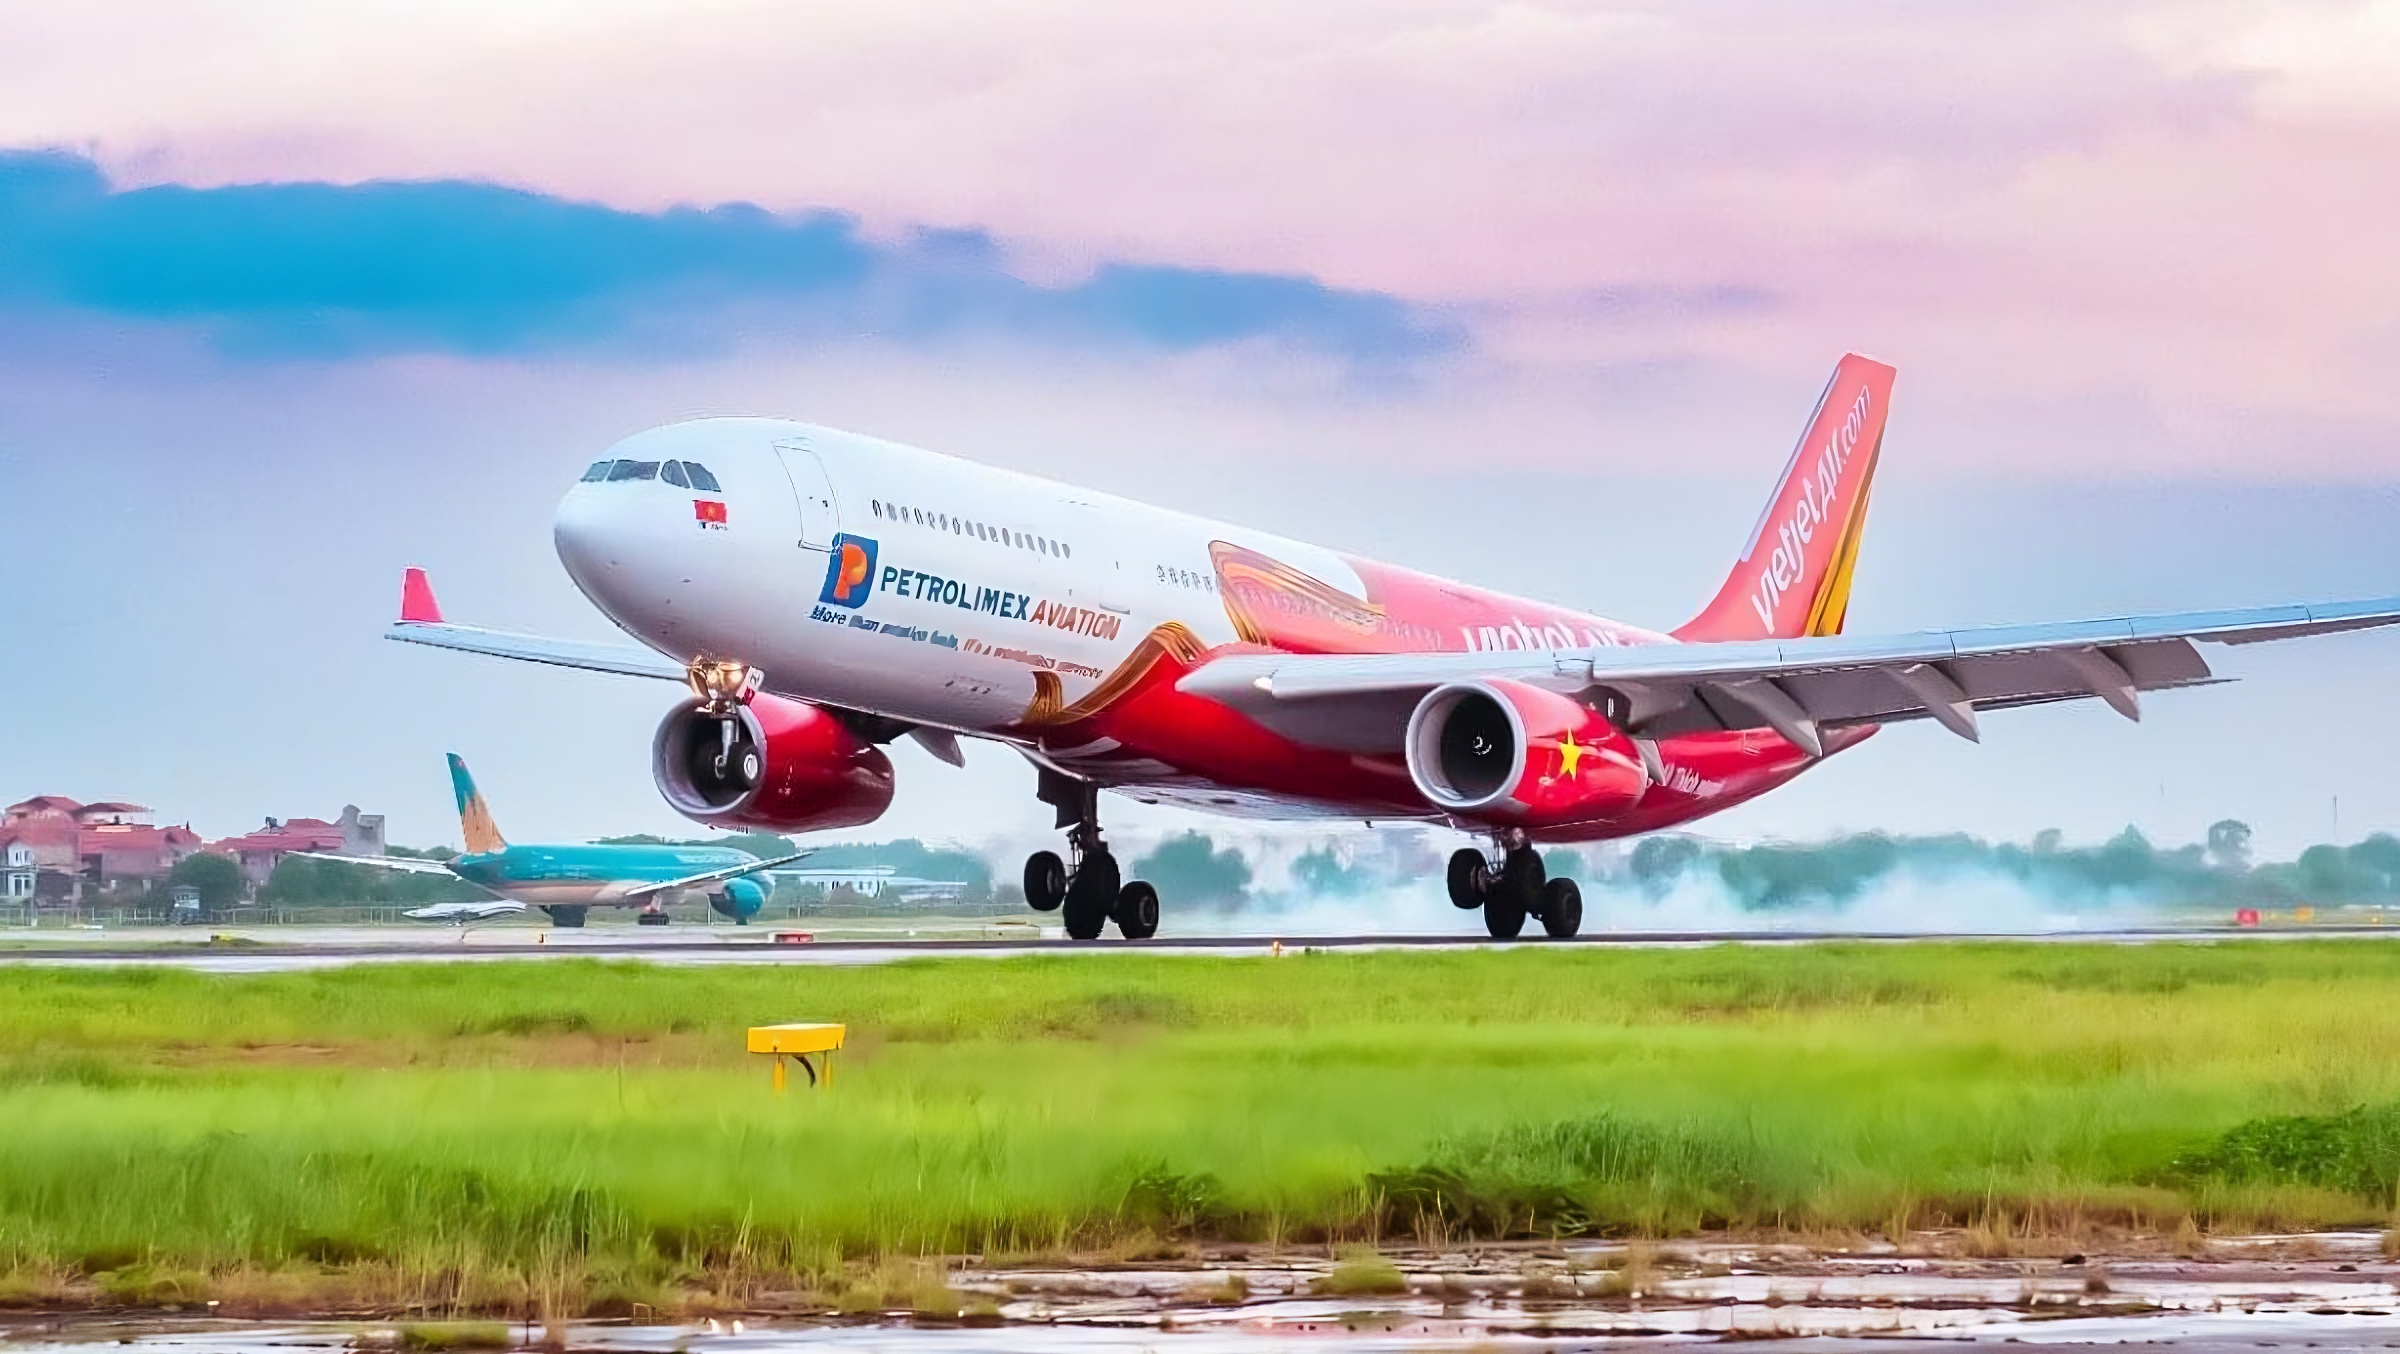 Bütçe havayolu Vietjet, Melbourne–Ho Chi Minh City'ye uçacak